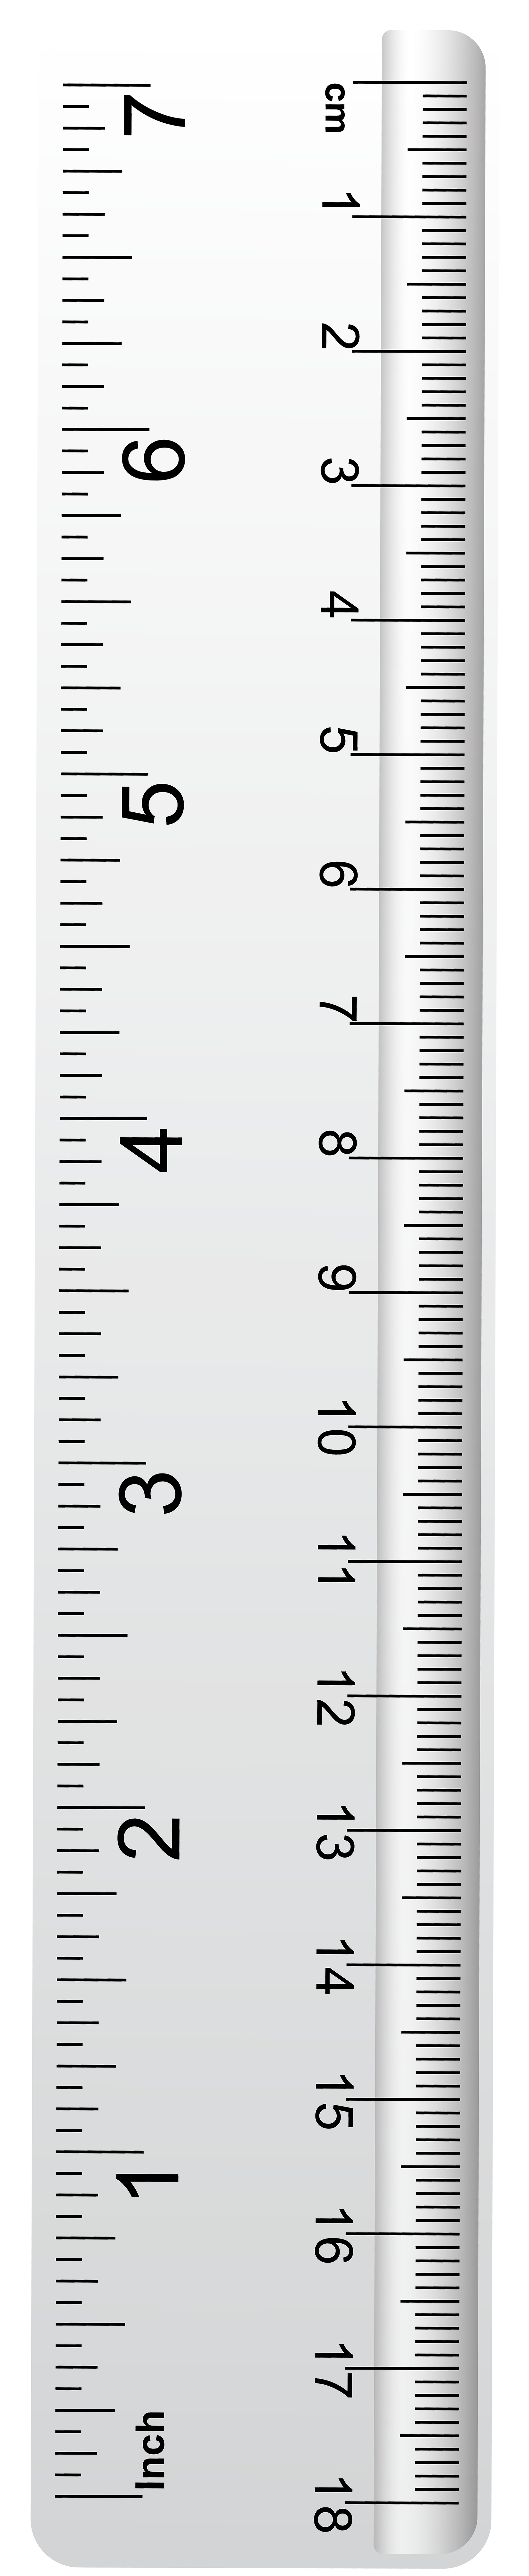 full sized ruler